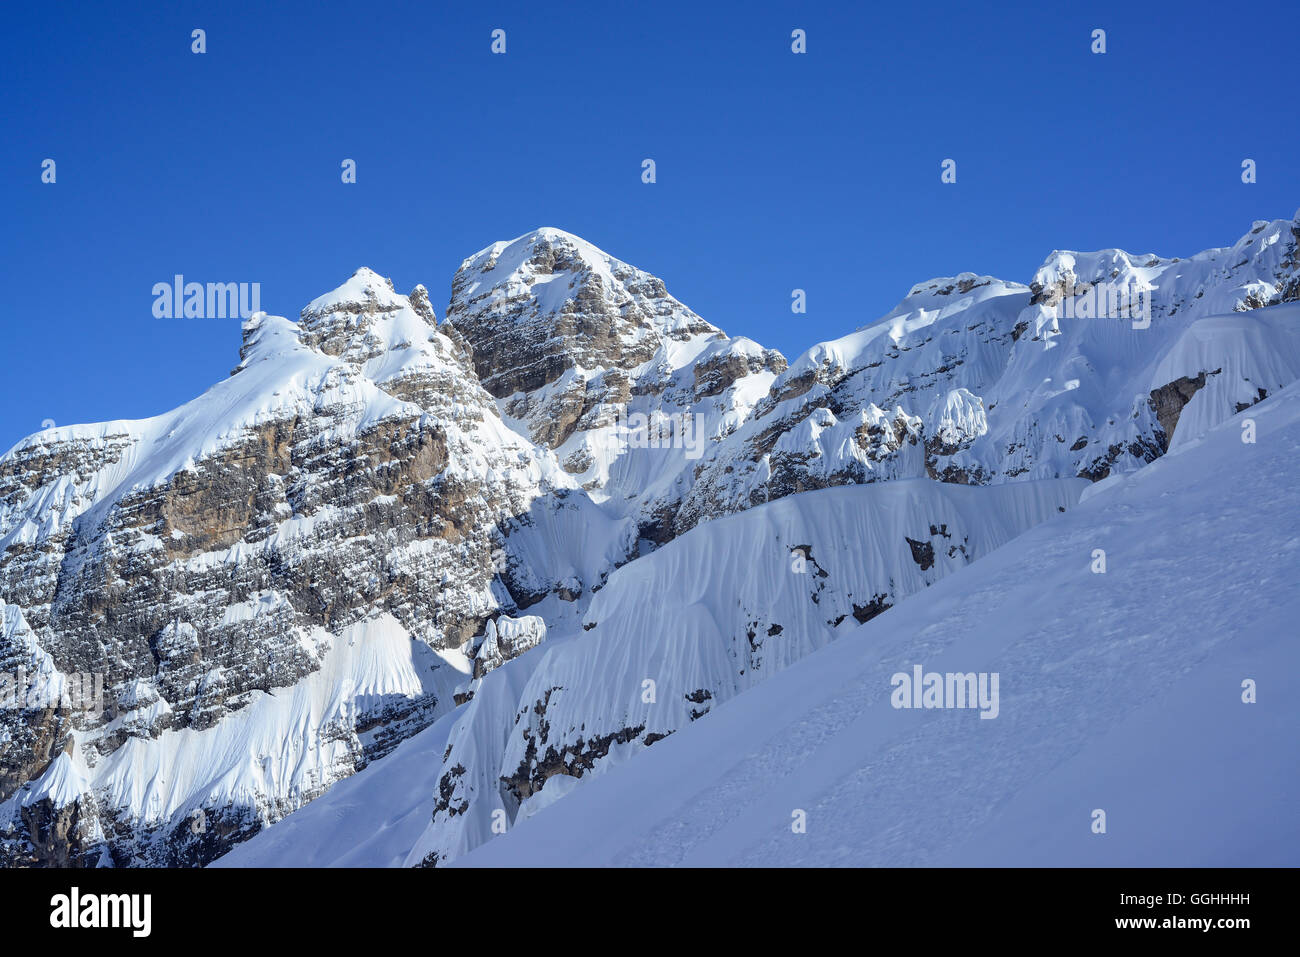 Snow-covered summits, Cristallo wind gap, Cristallo, Dolomites, Belluno, Veneto, Italy Stock Photo